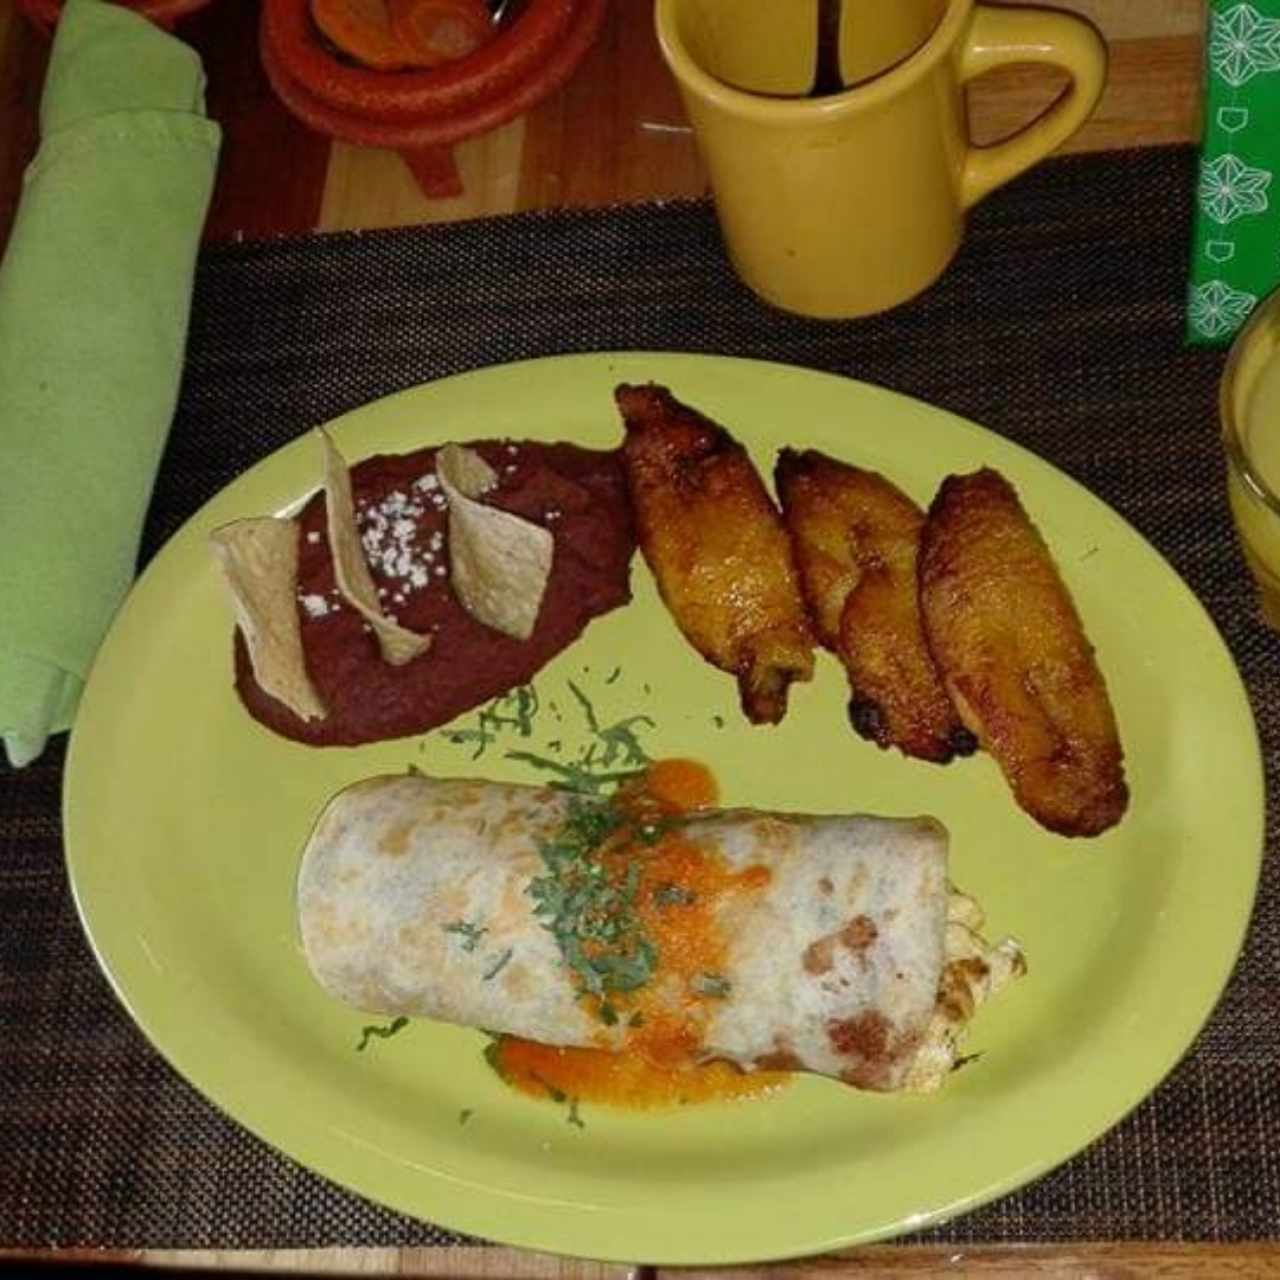 100% Mexicanos - Desayunos Mexicanos